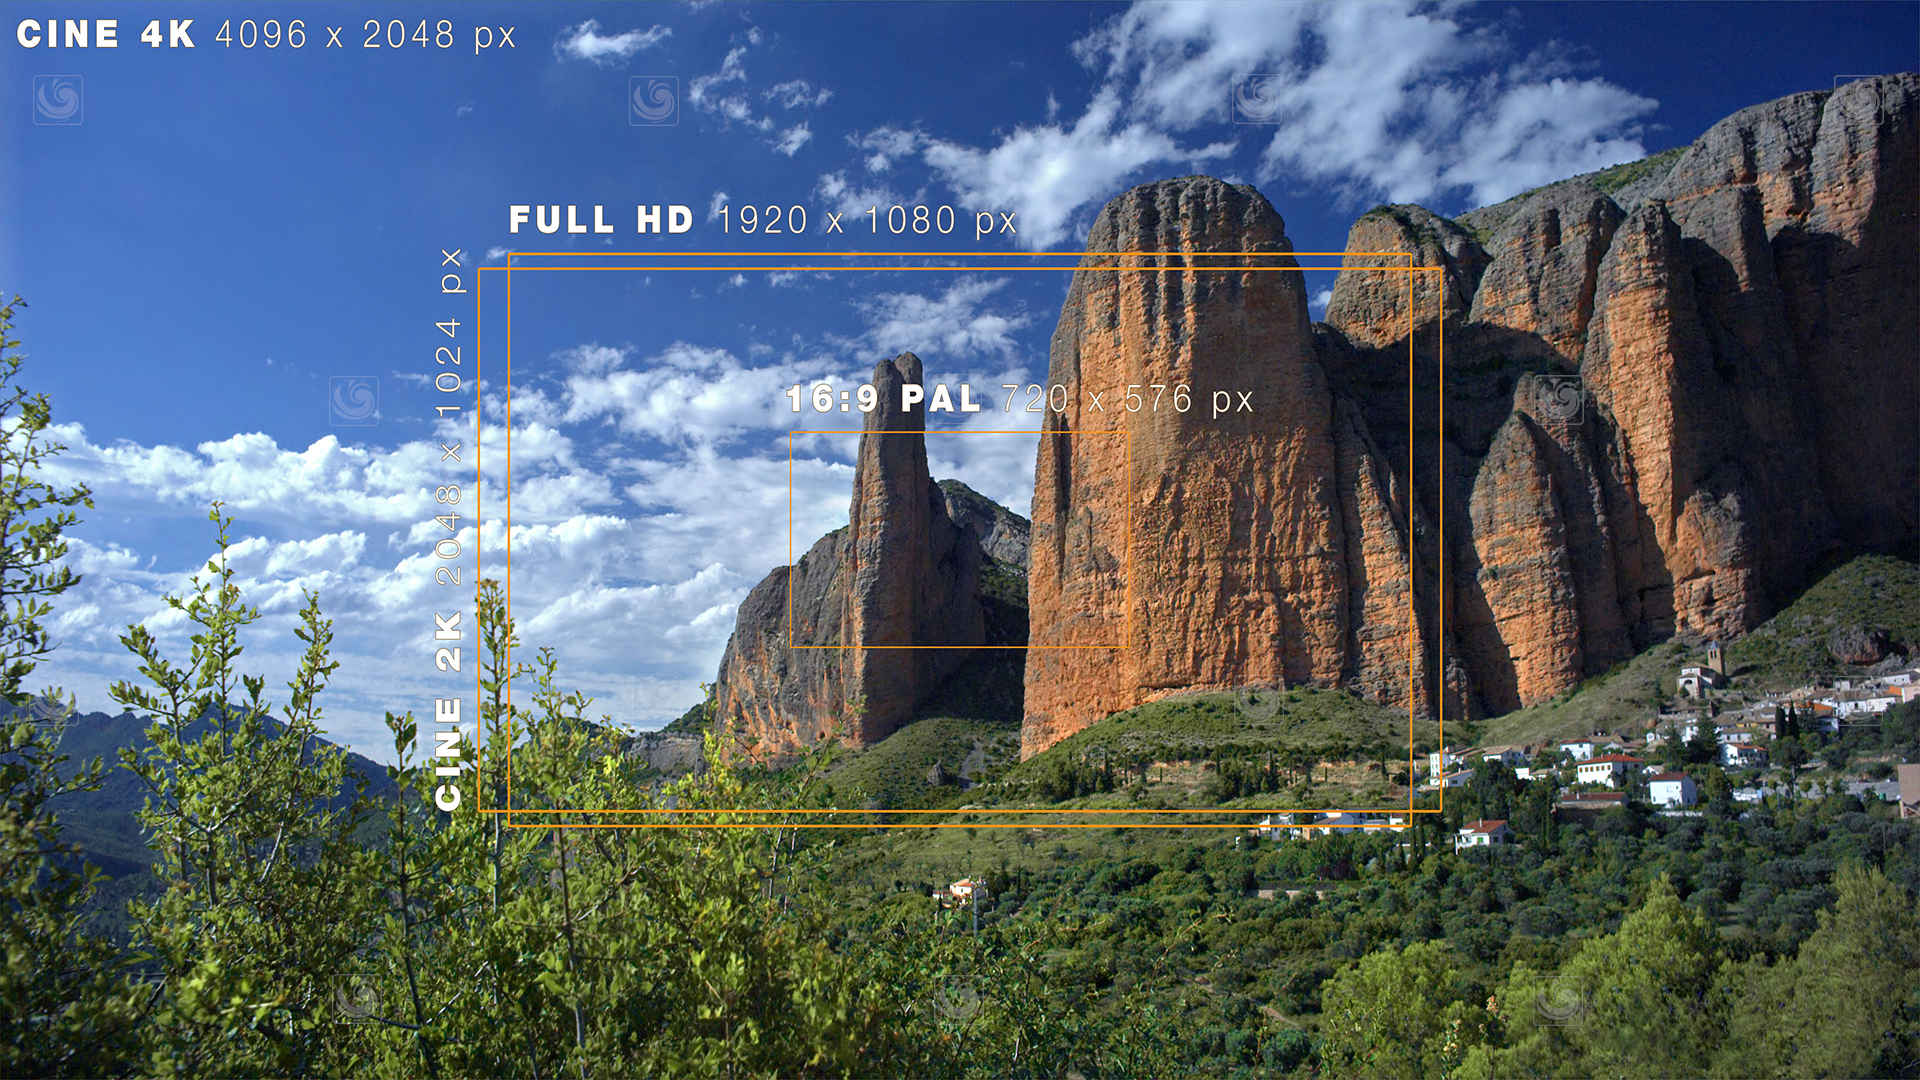 Diferentes valores de alta resolución cinematograñfica y de vídeo